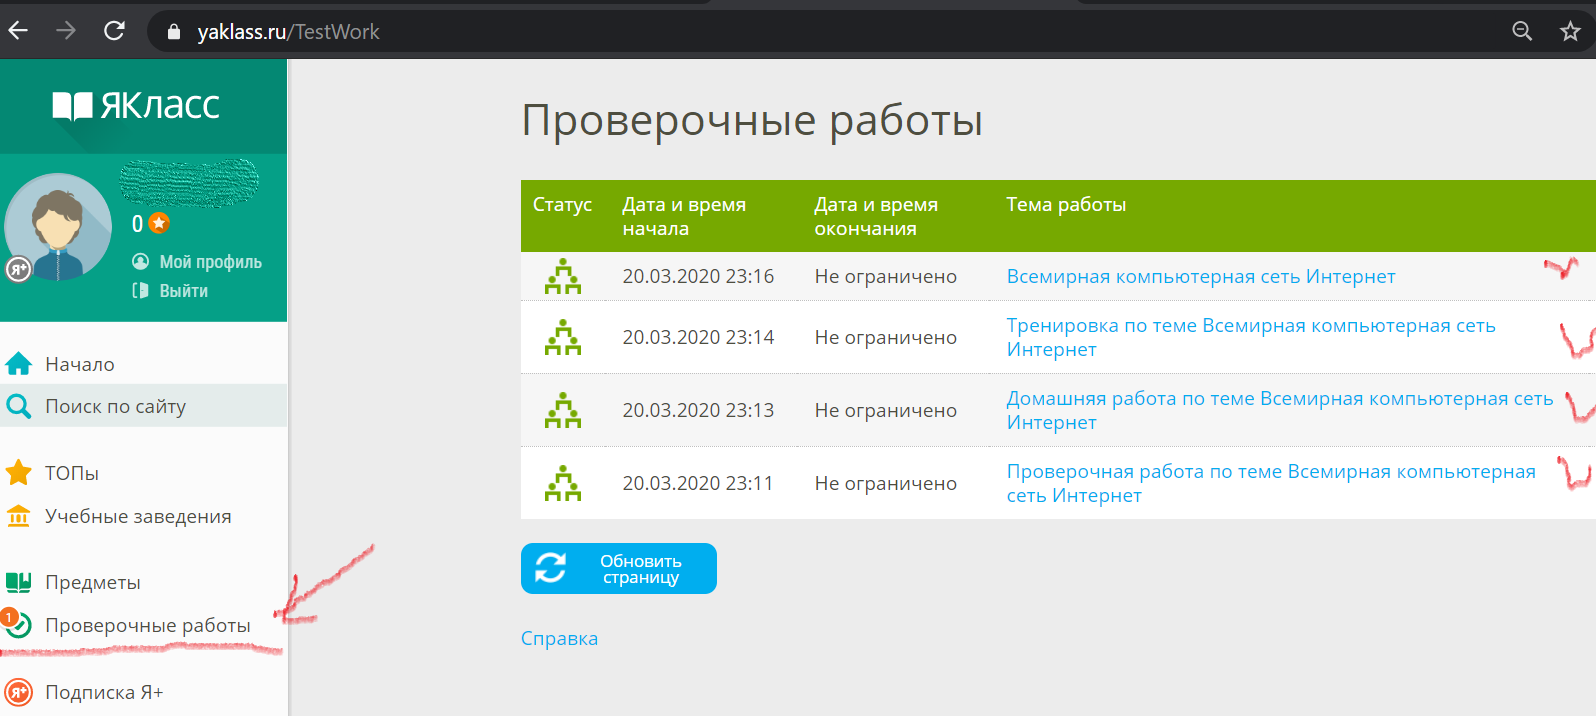 Sberinvstt ru. Я класс проверочные работы. Электронные таблицы ЯКЛАСС. Результаты теста ЯКЛАСС. ЯКЛАСС сеть интернет.